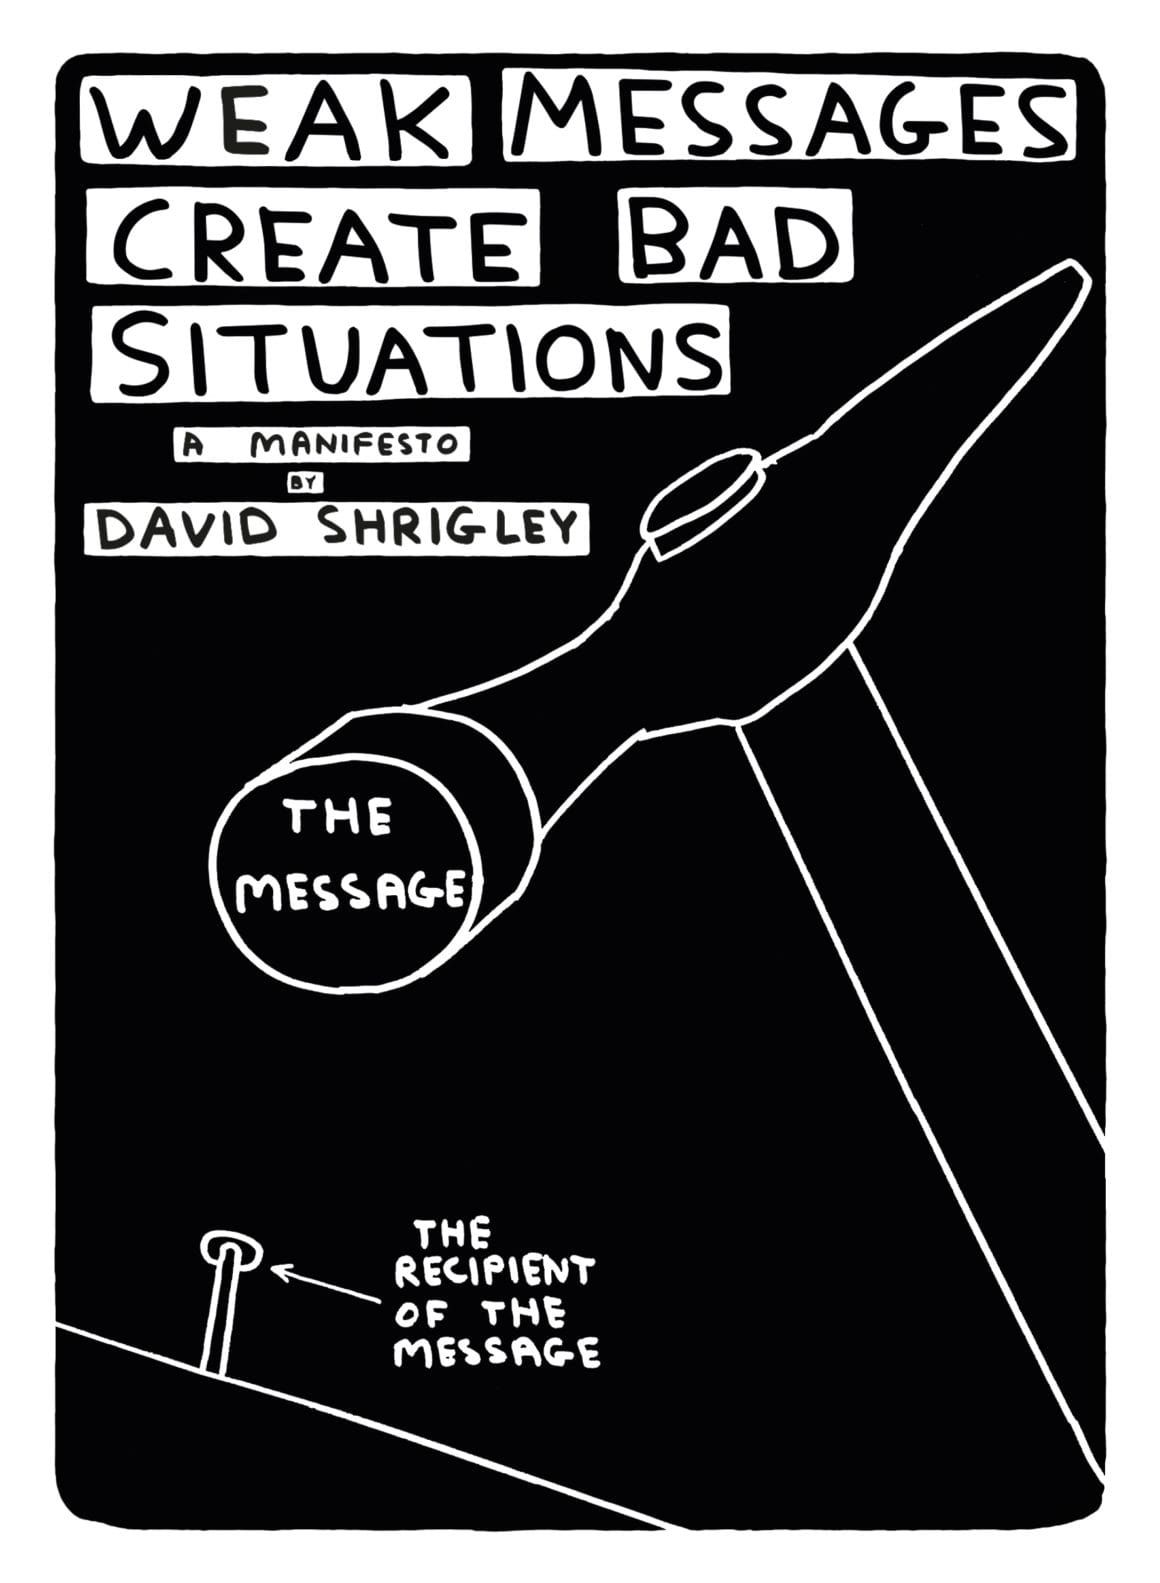 Première de couverture du livre Weak messages create bad situations (2016) de David Shrigley.